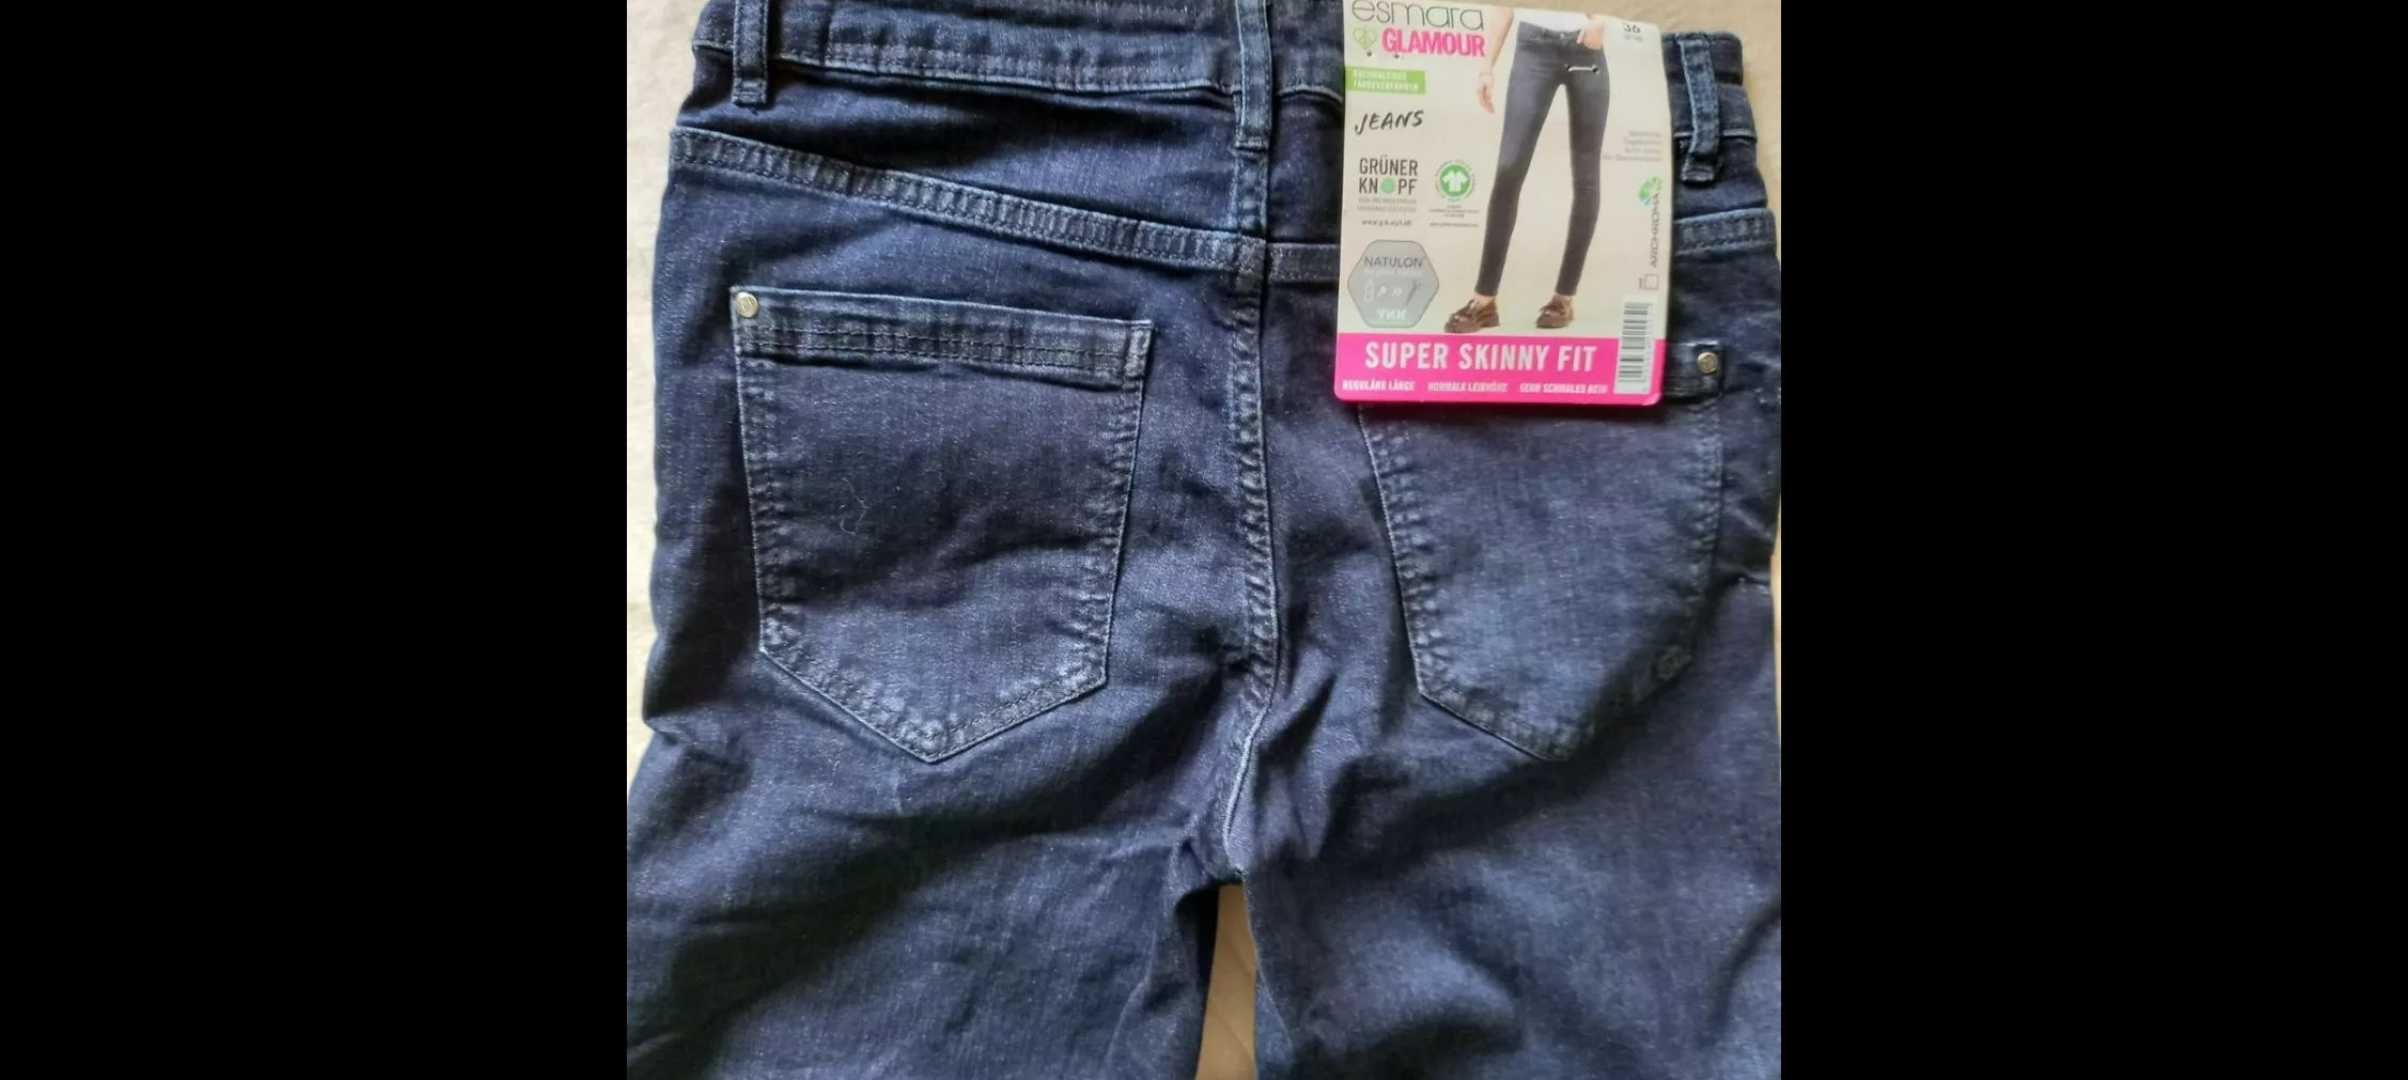 Нові жіночі джинси